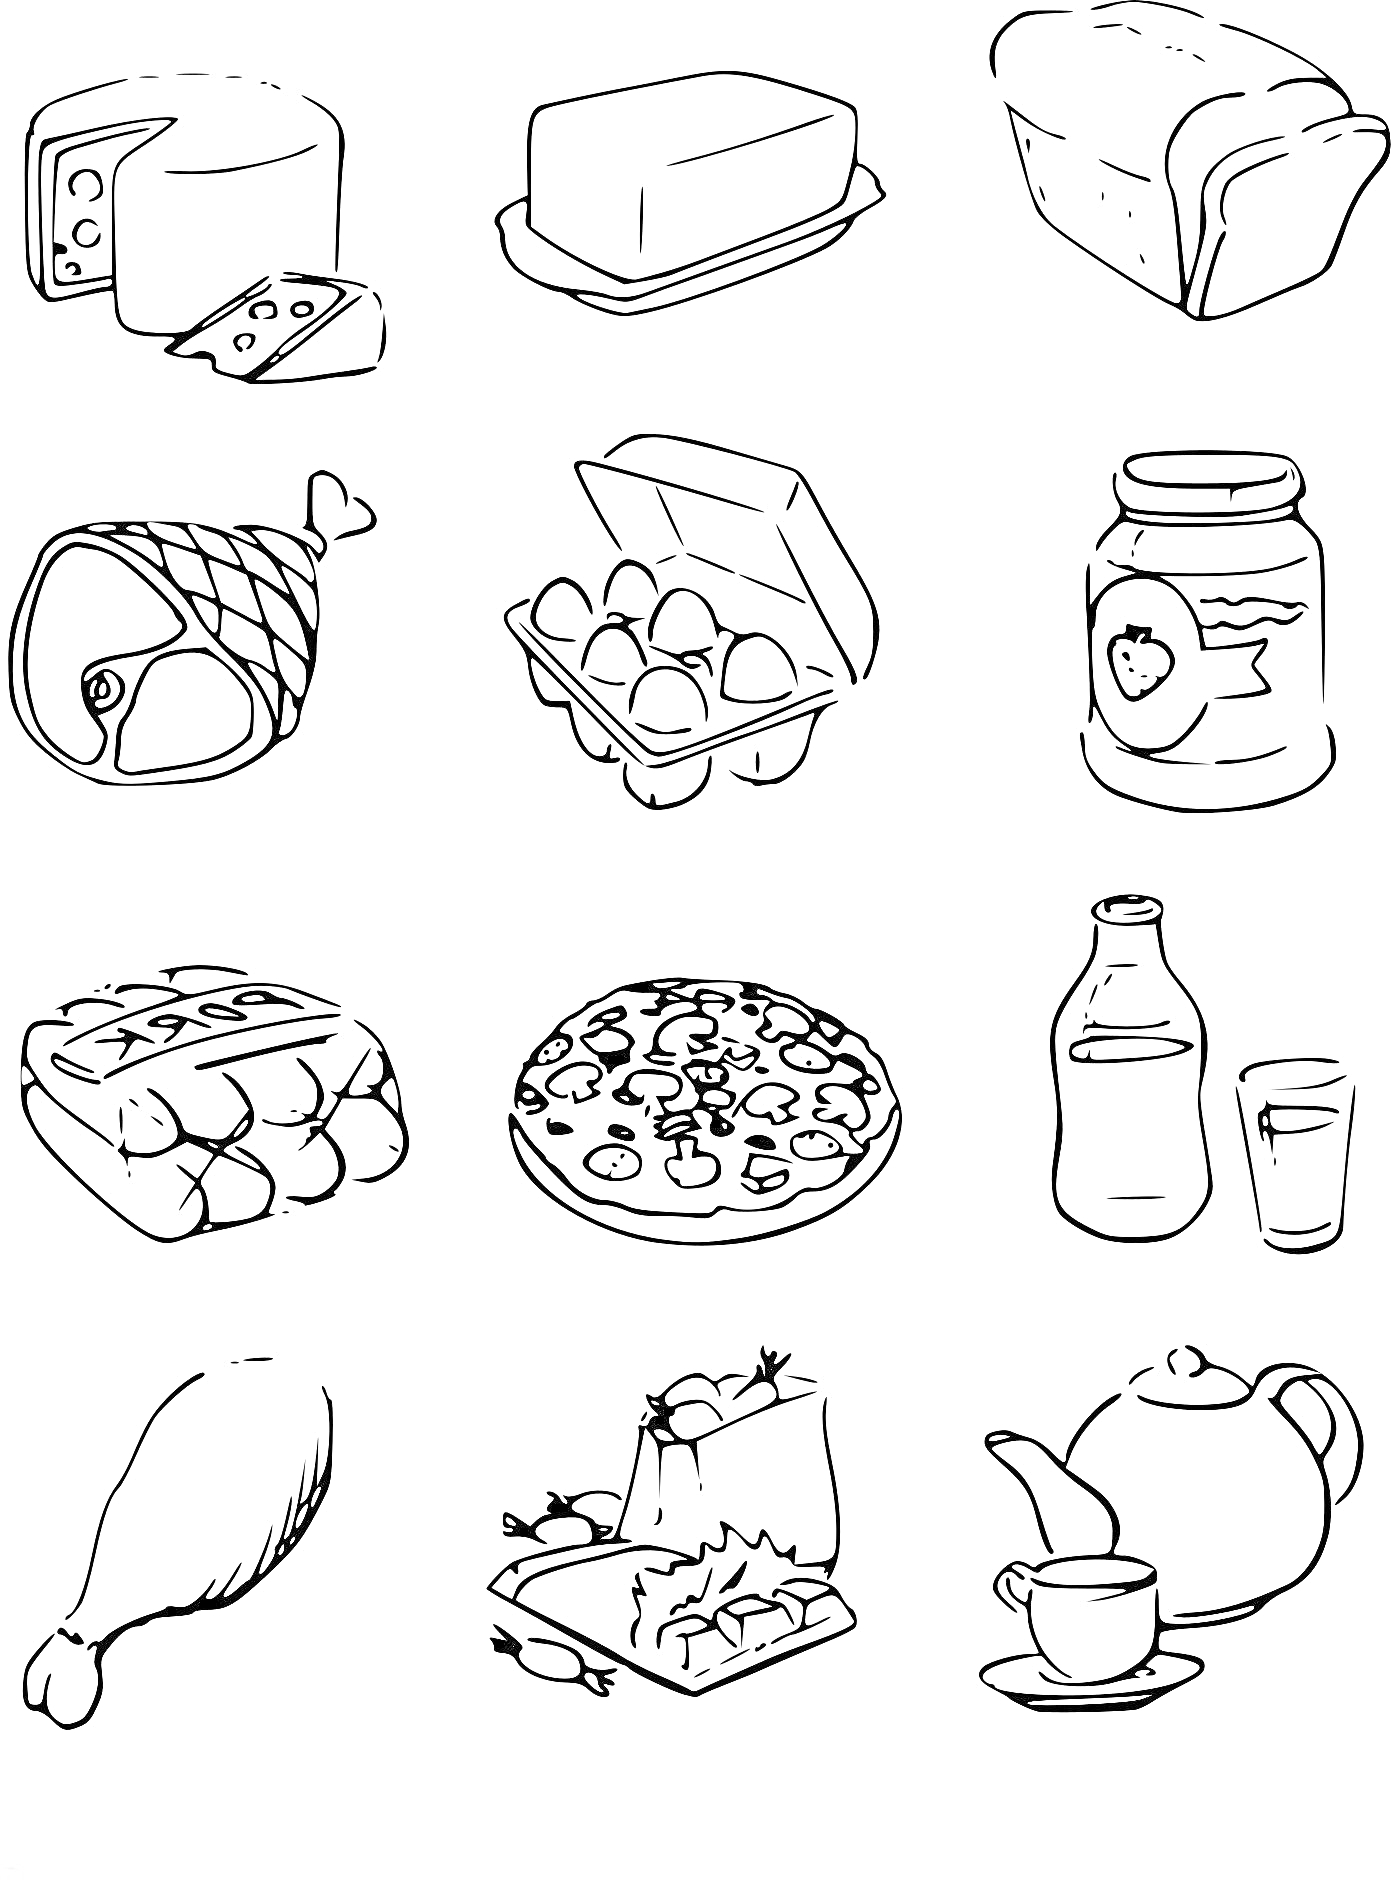 Раскраска сыр, масло, хлеб, ветчина, яйца (картонная упаковка), джем (банка), шоколад, пицца, молоко (бутылка) и стакан, куриная нога, торт, чайник и чашка